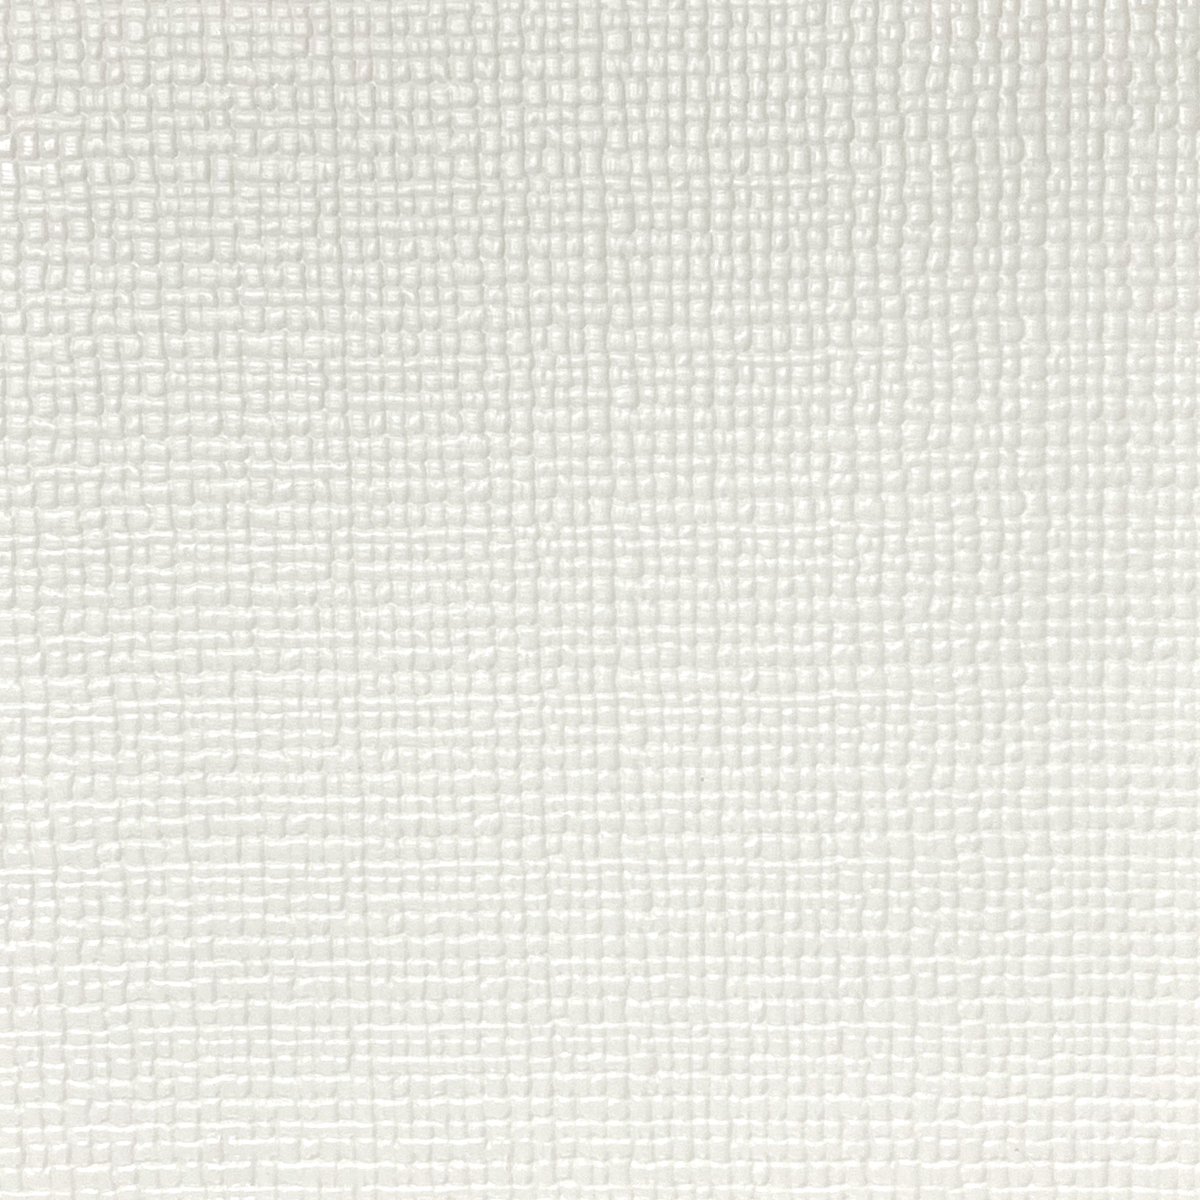 디자인스킨 셀프시공 롤매트 2m (110 x 200 x 1.6cm) - 베이직 크림